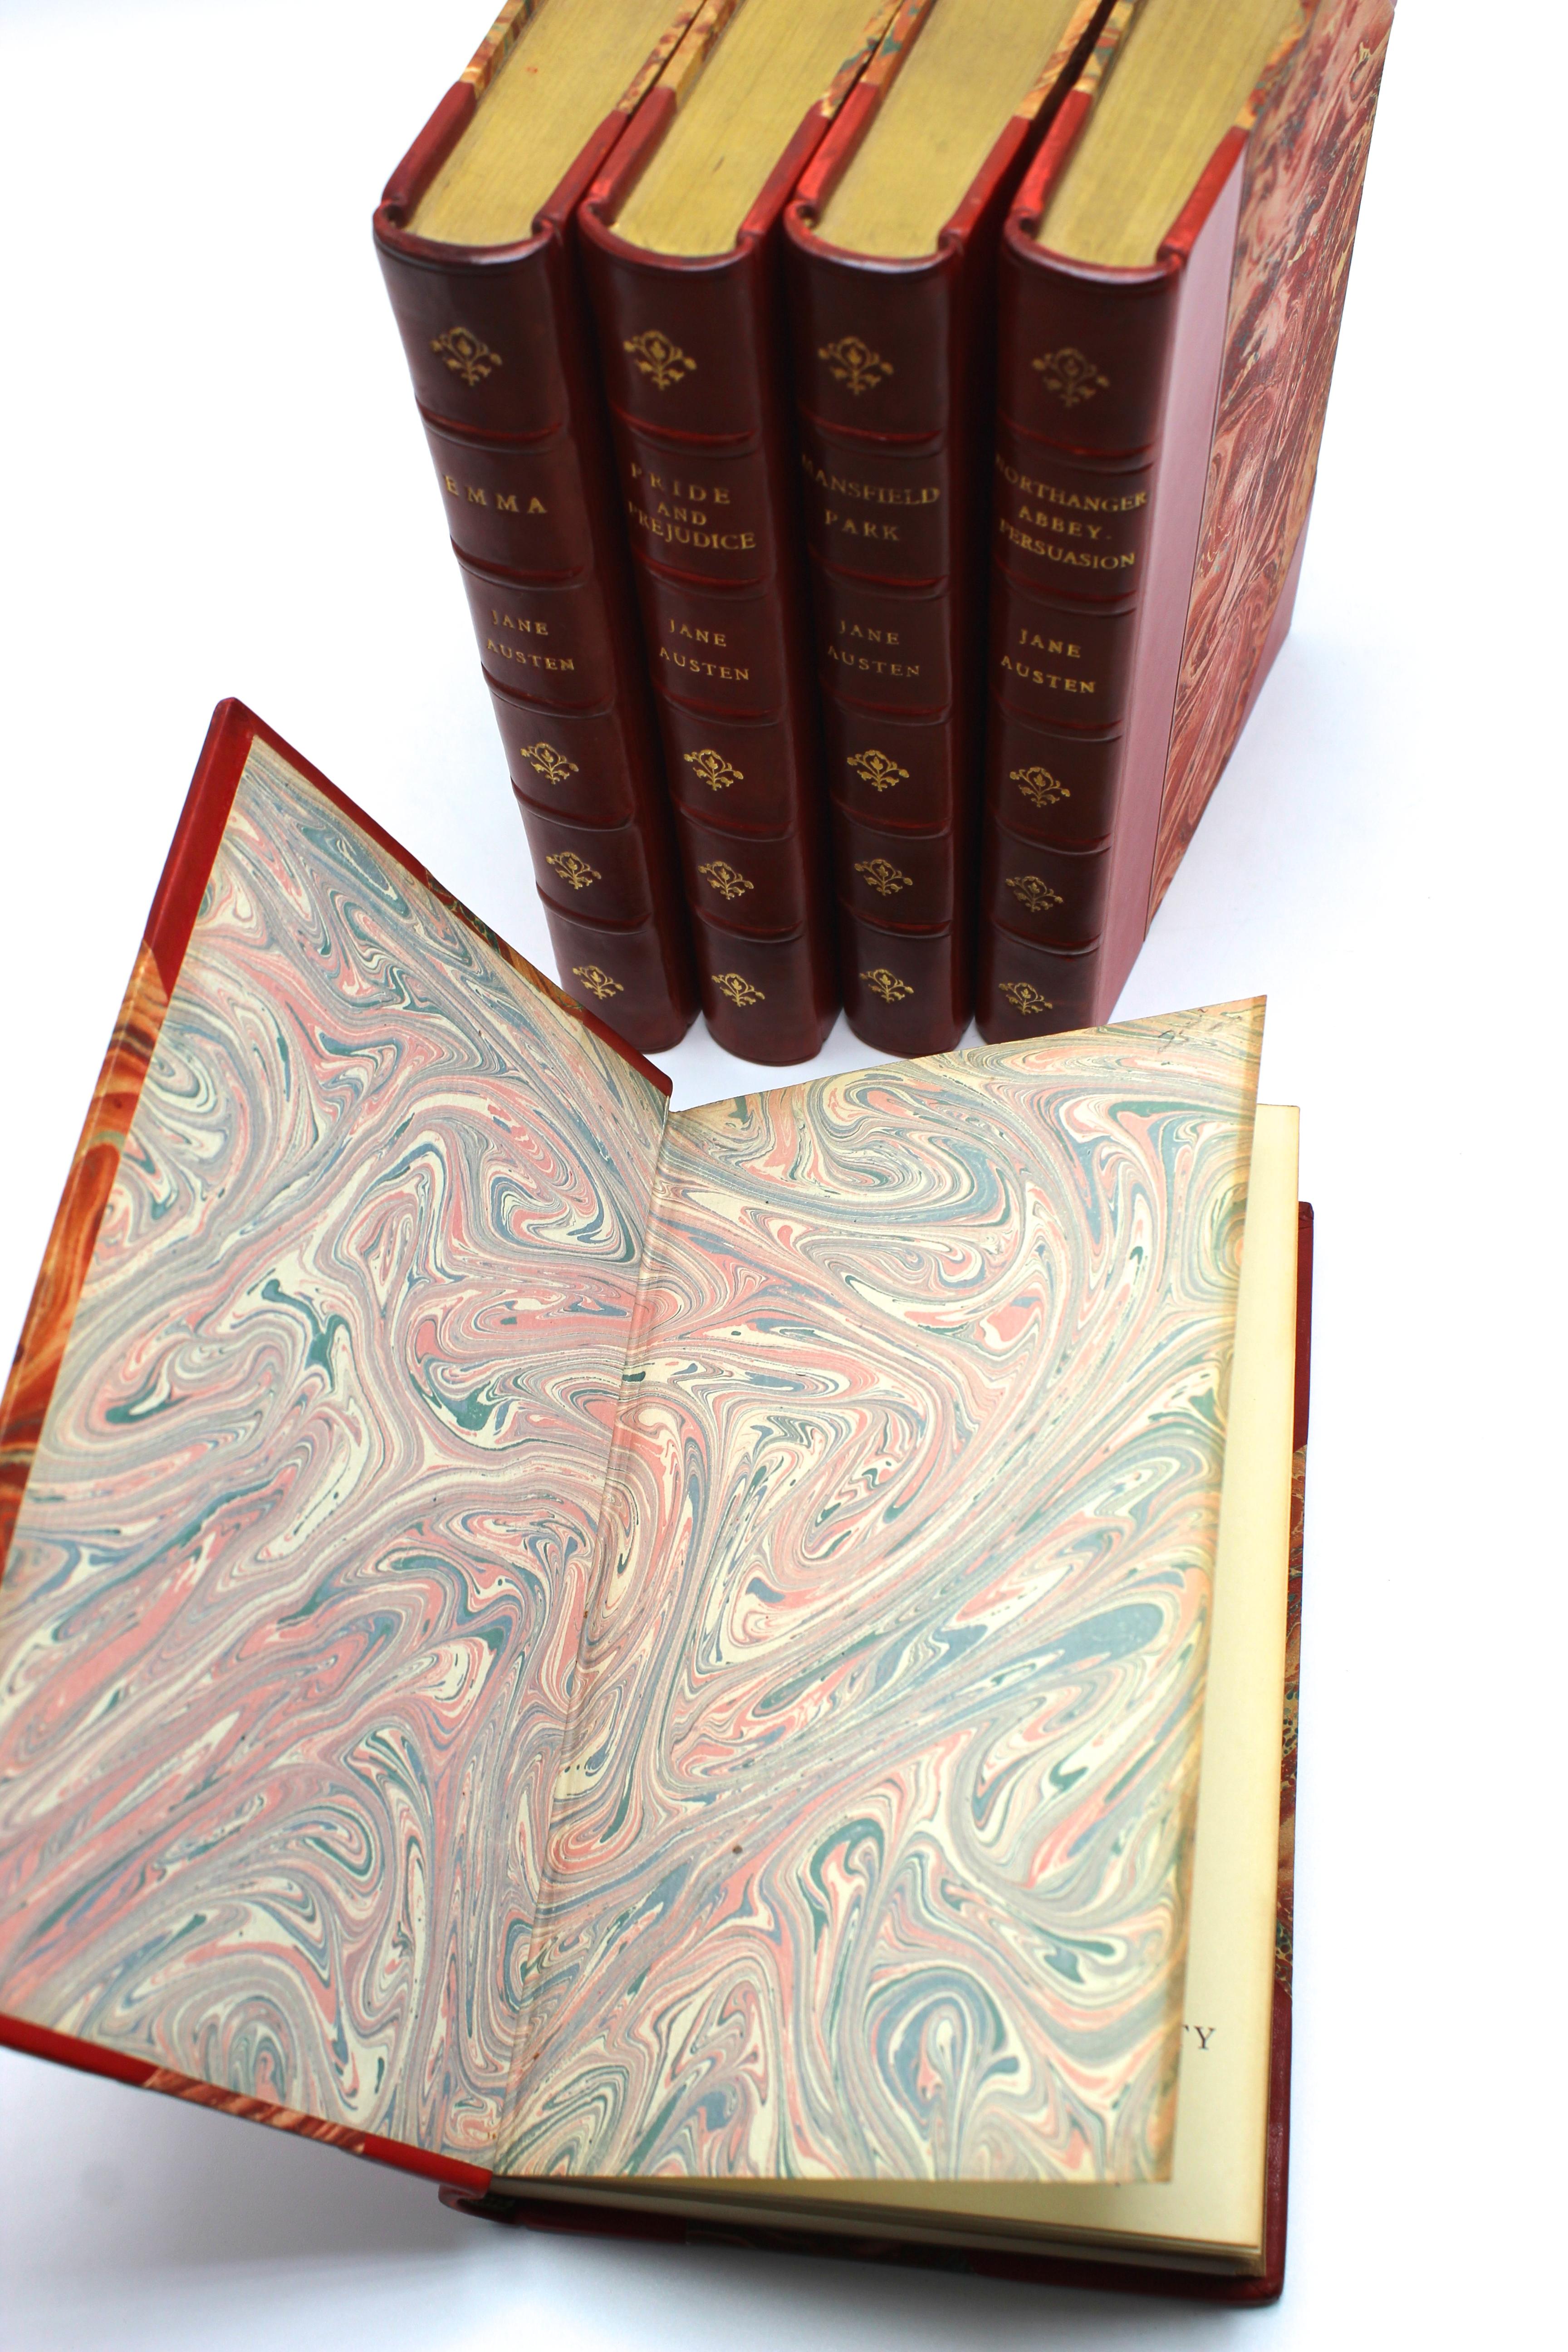 Jane Austen's Werke, herausgegeben von Robert Riviere & Son, fünf Bände, 1920er Jahre (Frühes 20. Jahrhundert)